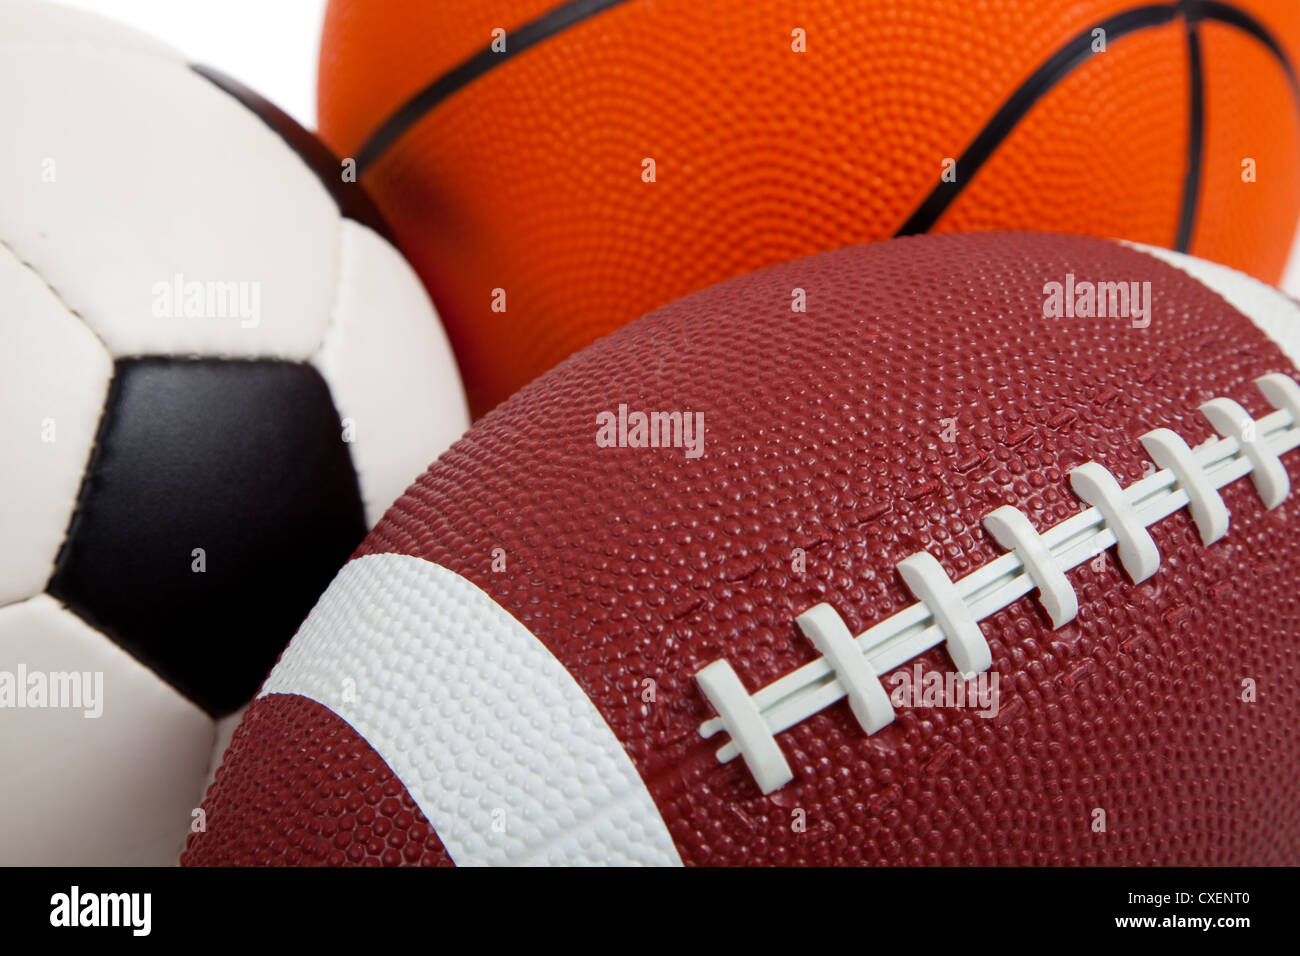 Surtido de balones deportivos o equipos, incluyendo un balón de fútbol, baloncesto, fútbol americano, y Foto de stock